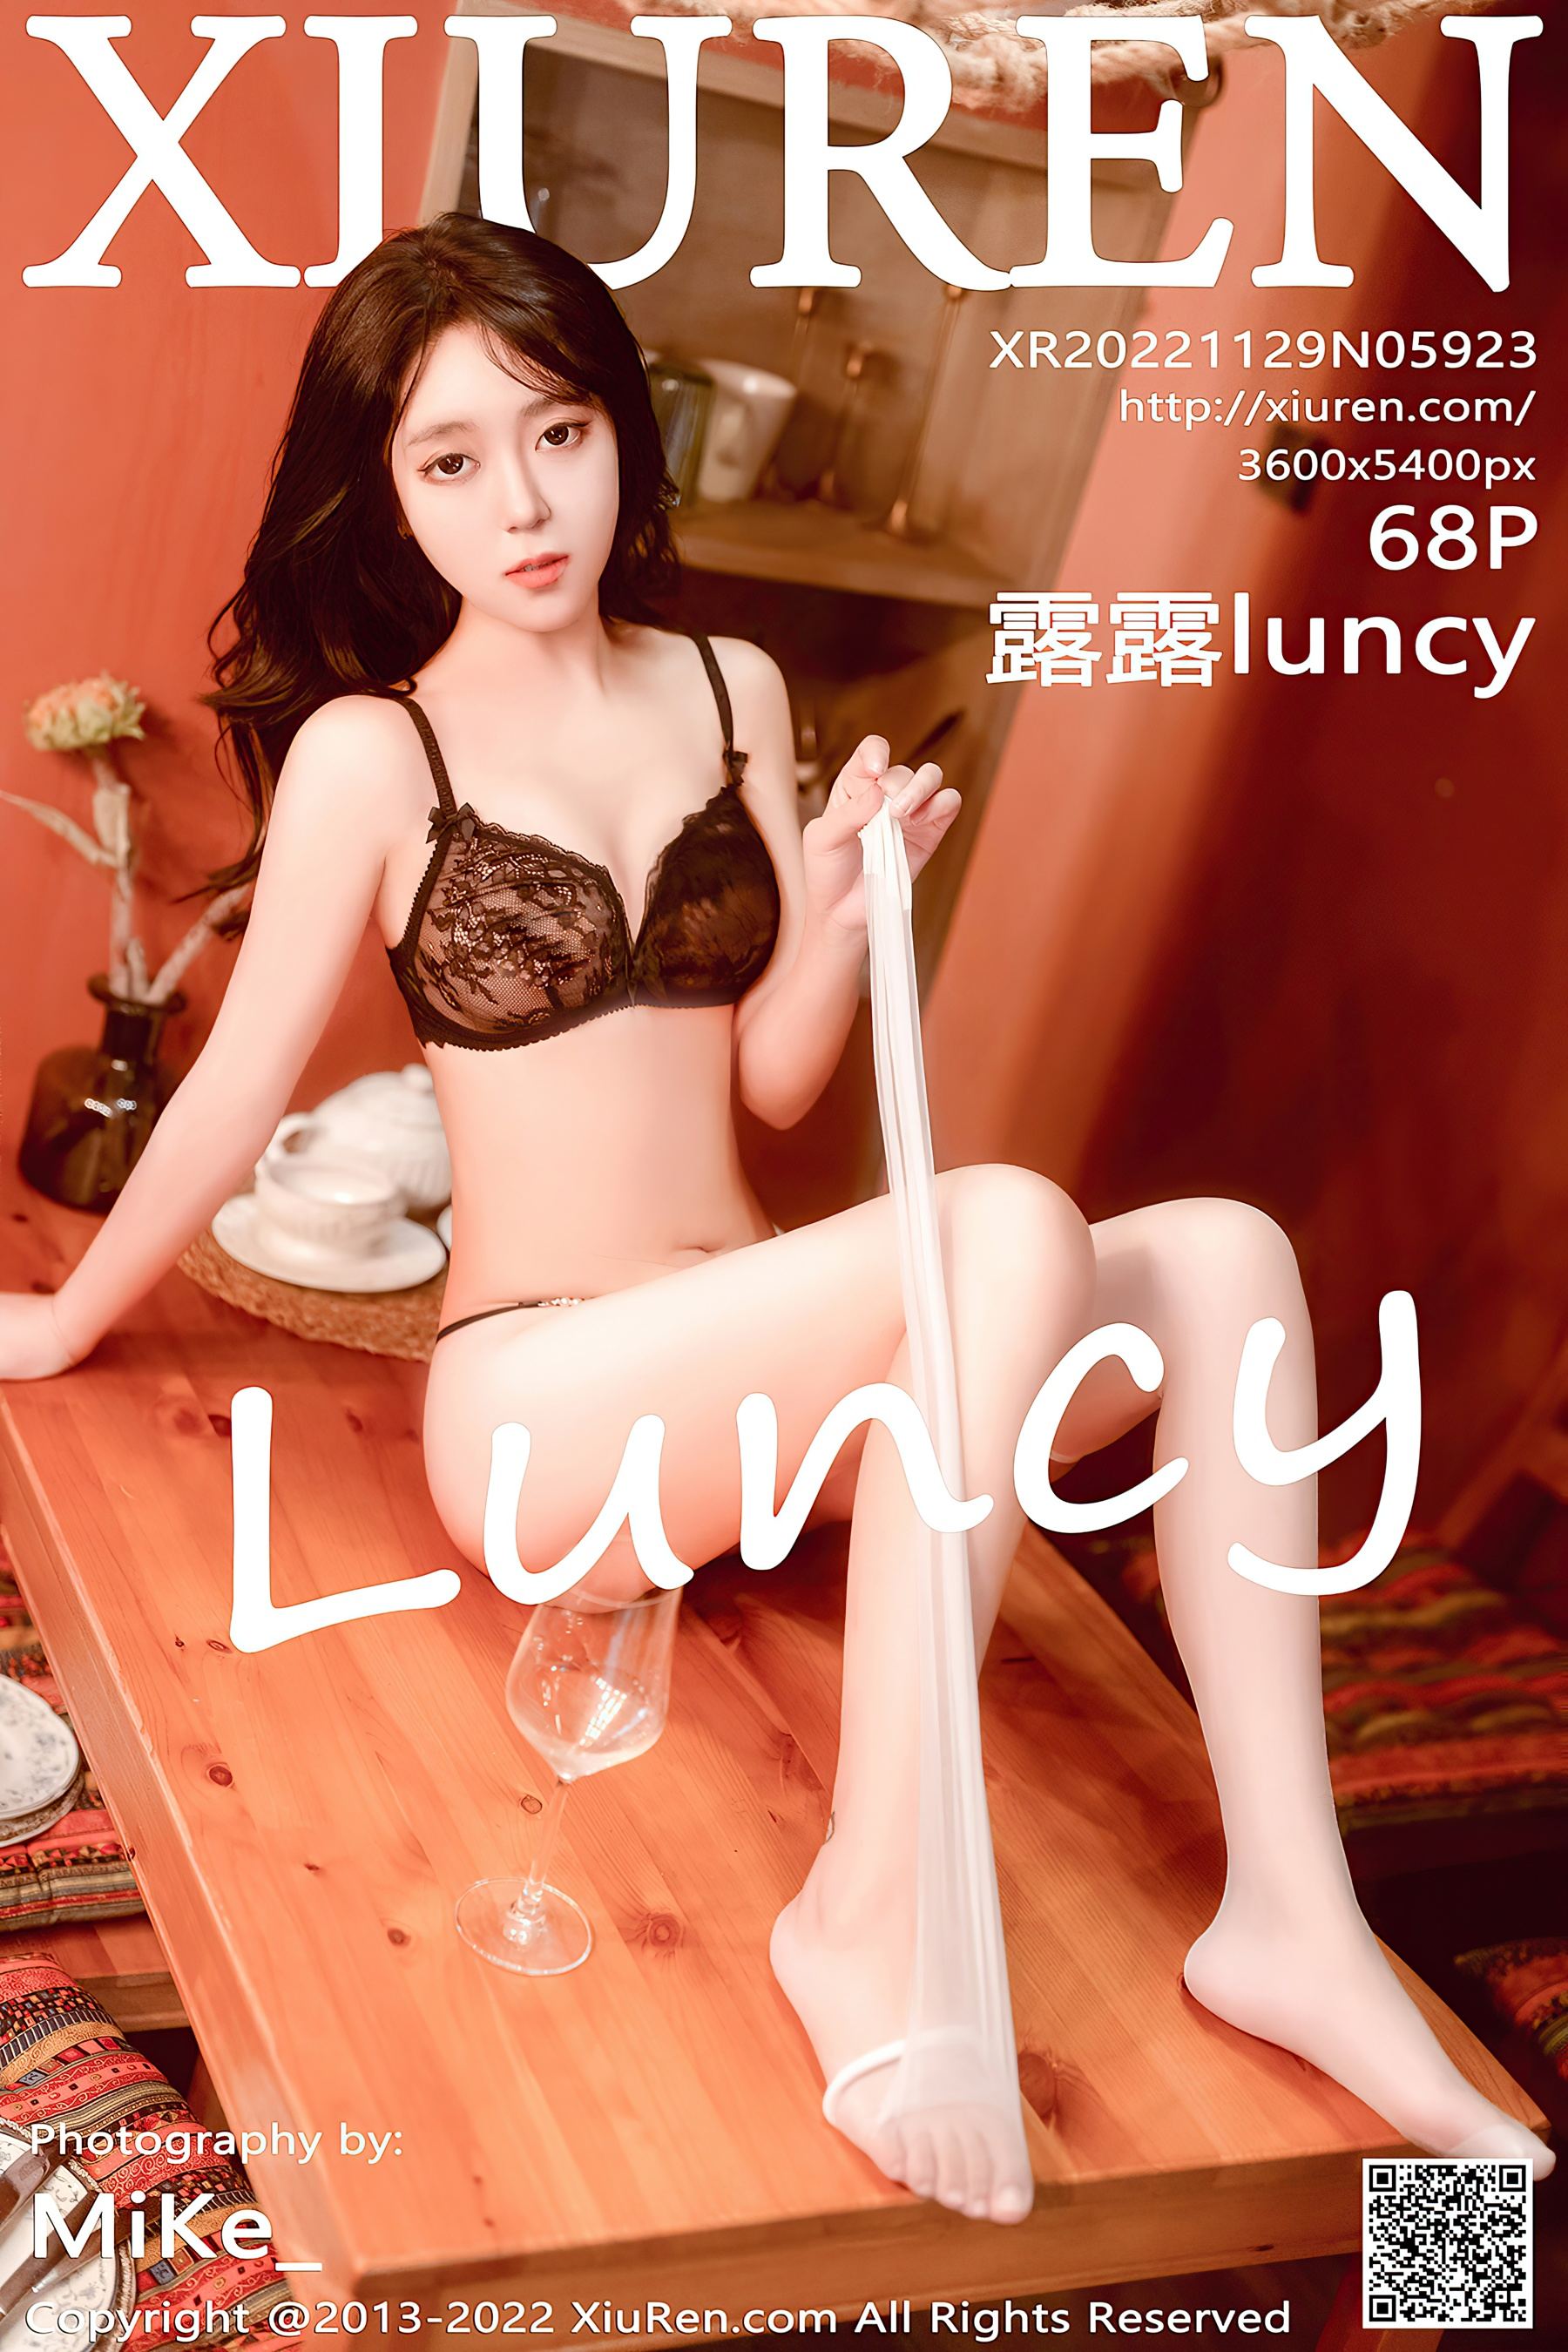 [XiuRen秀人网] No.5923 露露luncy 丰腴美臀